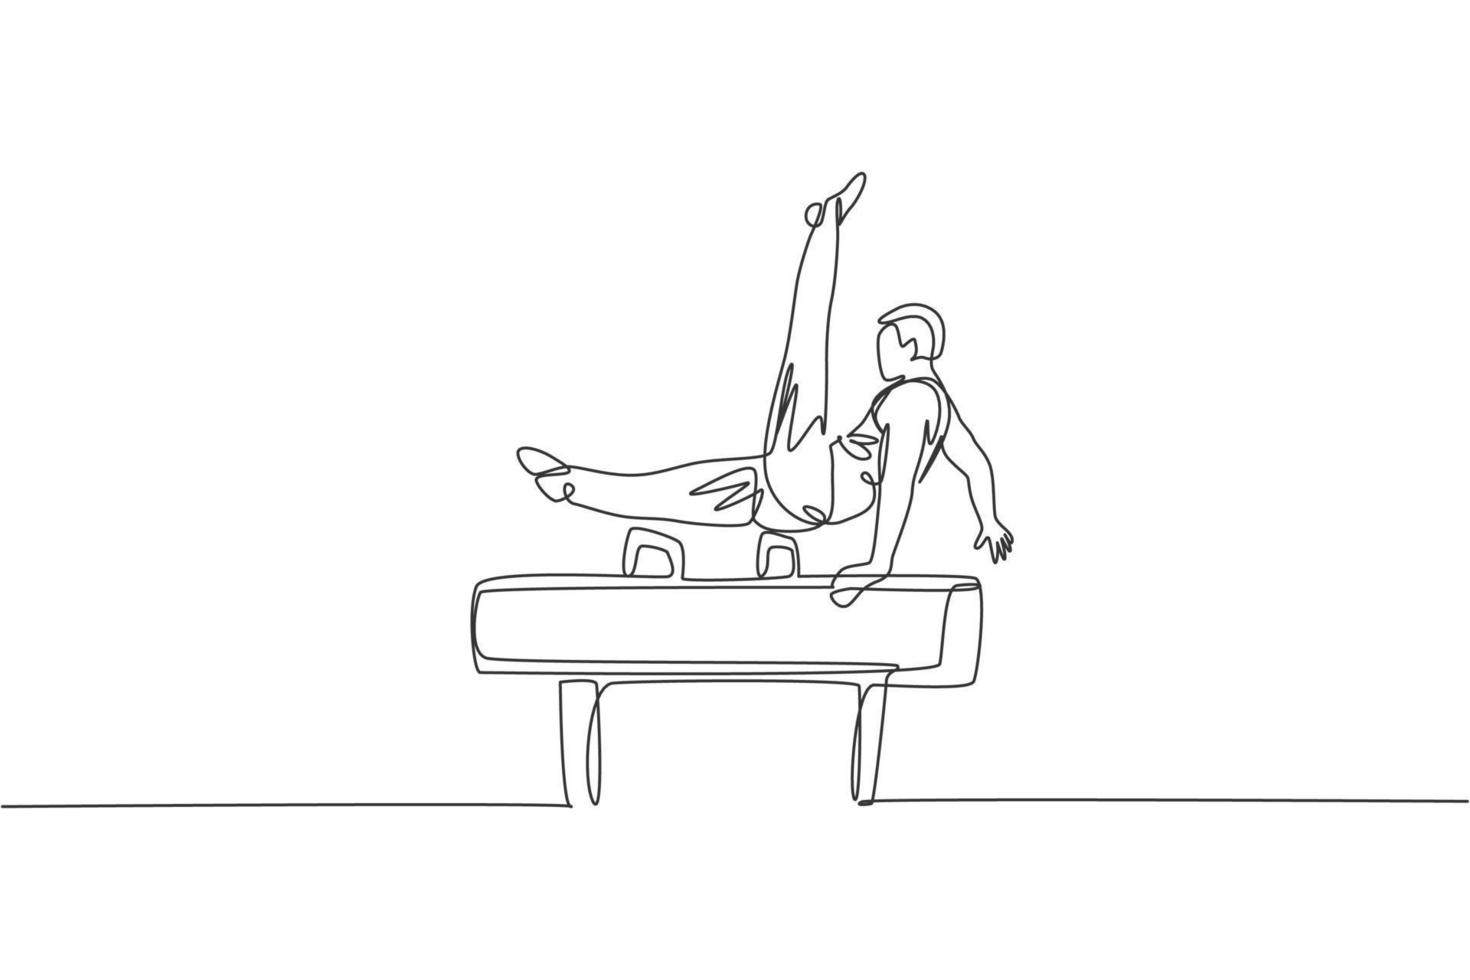 en enda linjeteckning av ung stilig gymnast man utövar pommel häst vektorgrafisk illustration. hälsosam livsstil och atletisk sport koncept. modern kontinuerlig linjeritningsdesign vektor